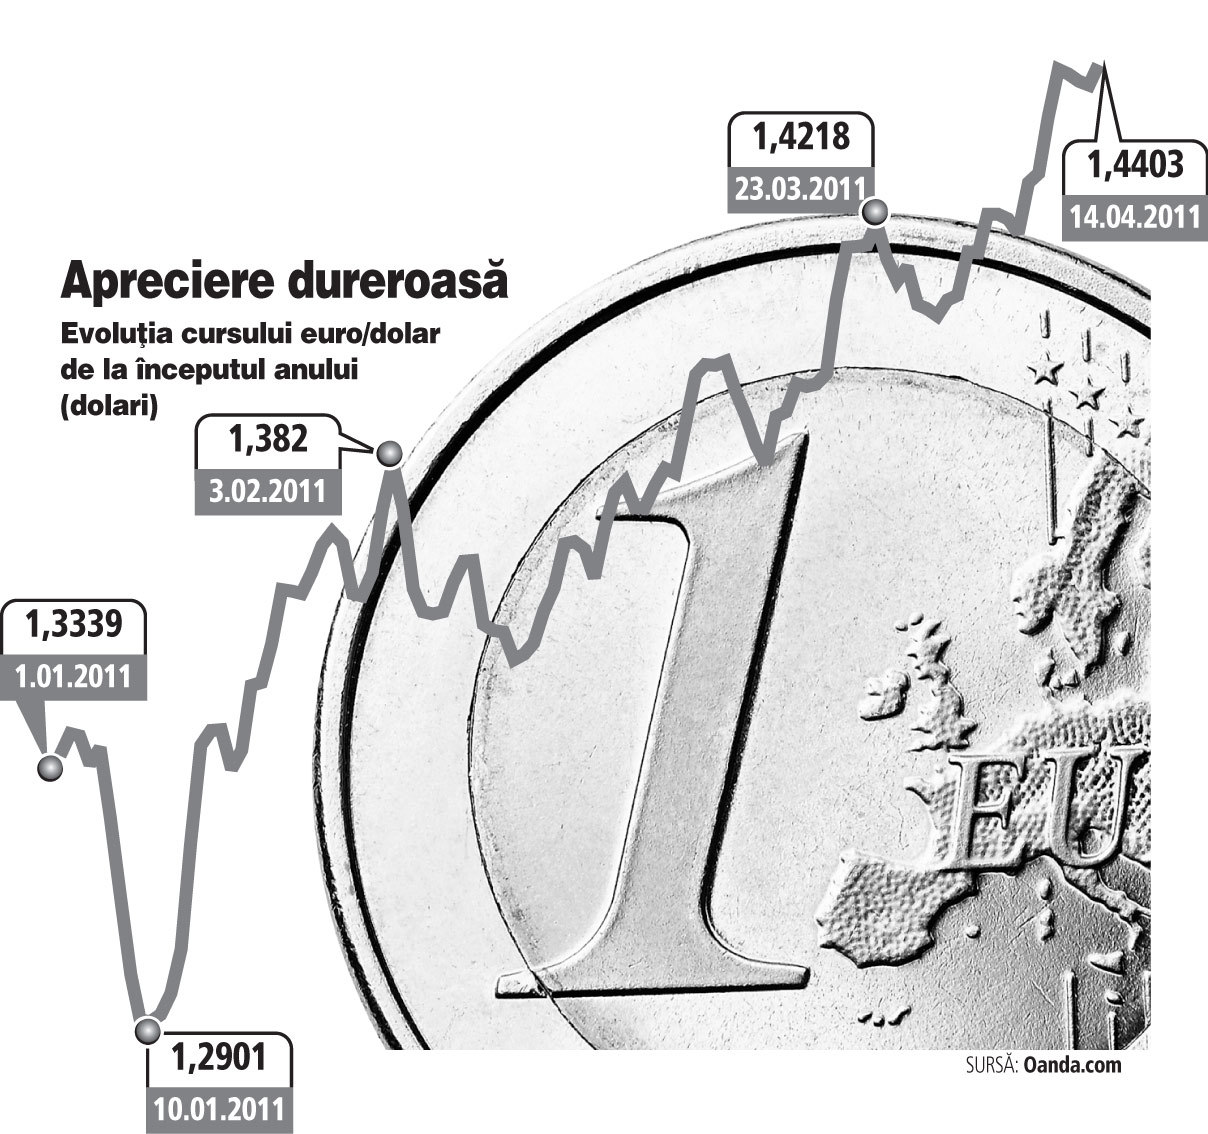 Aprecierea puternică a euro loveşte în economiile „bolnave“ ale Portugaliei şi Irlandei. Şi Spania are de suferit, dar mai puţin